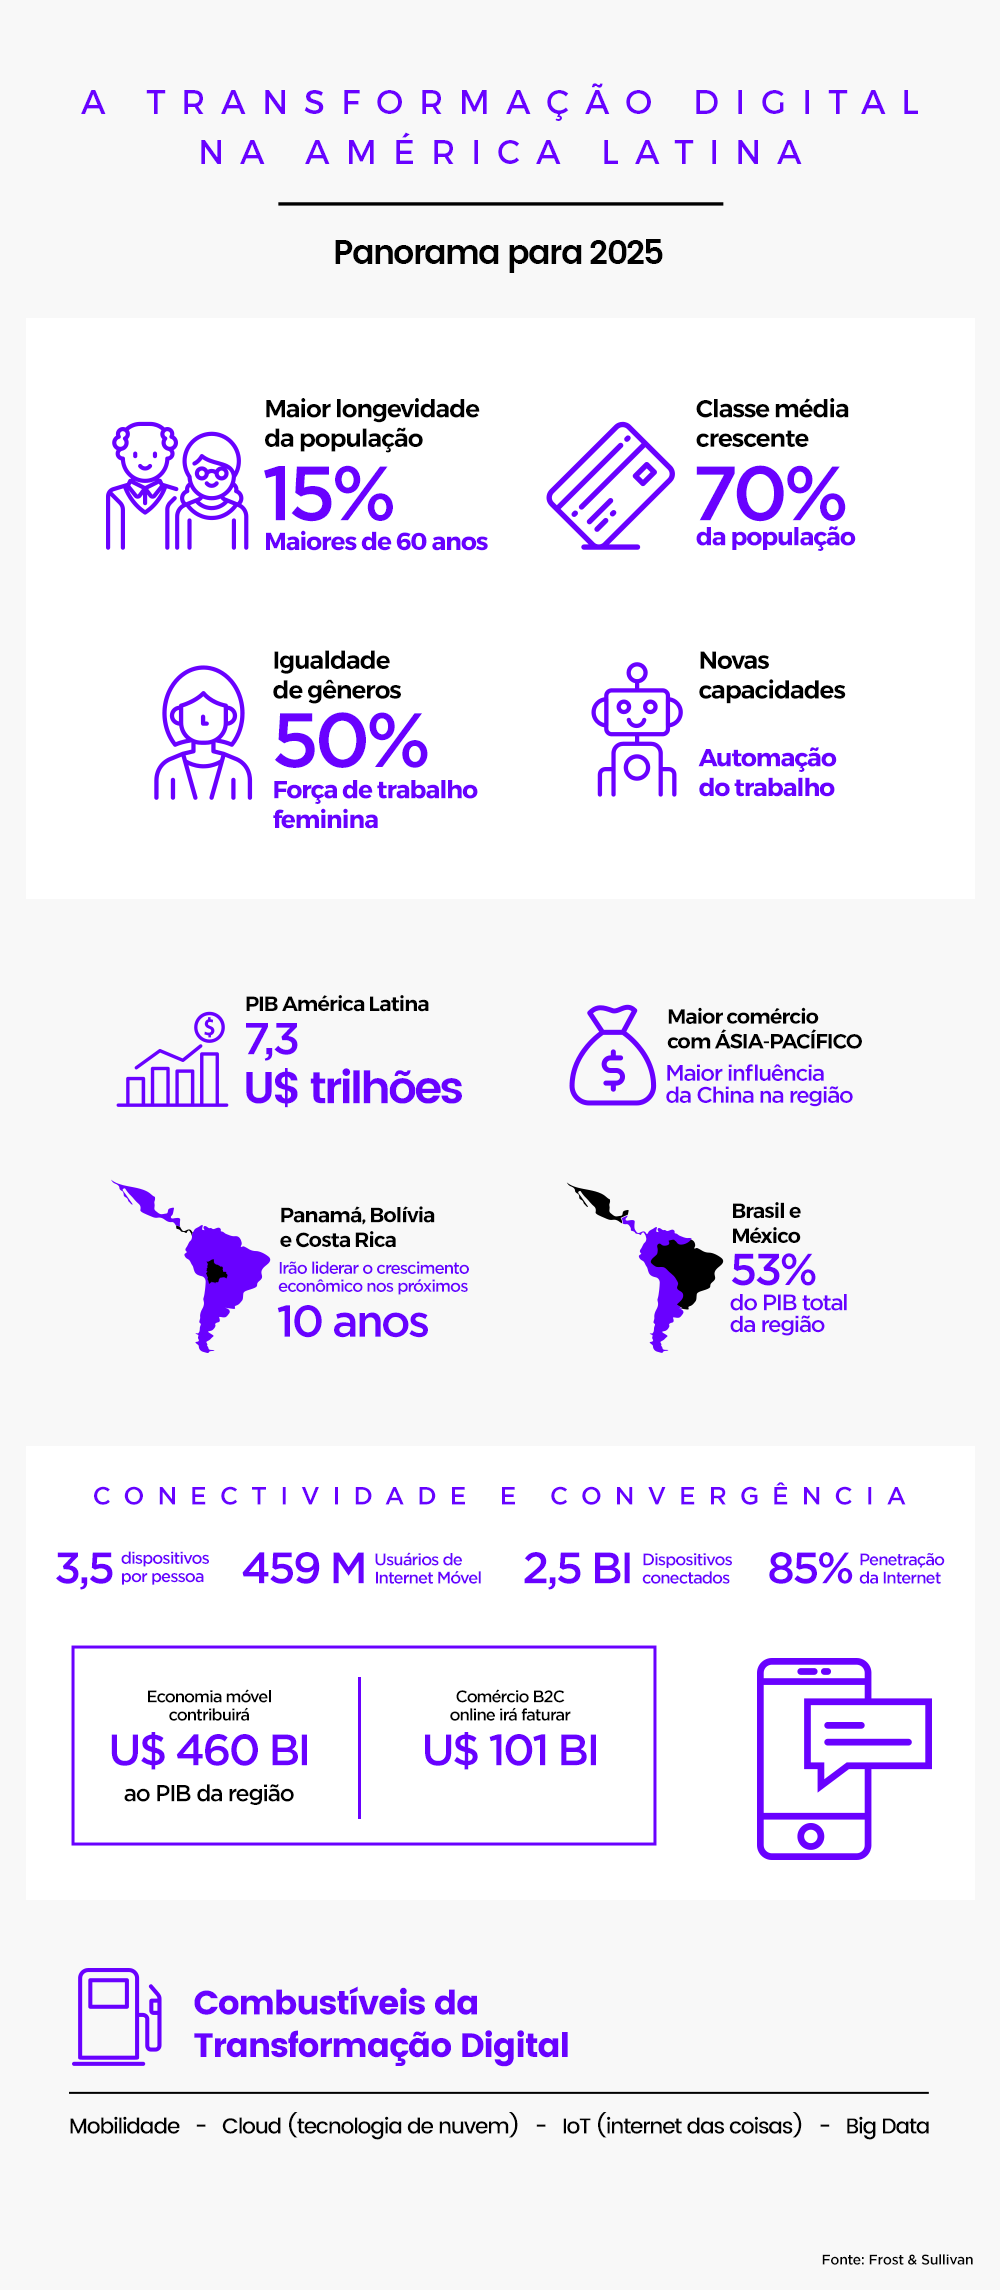 A Transformação Digital na América Latina até 2025